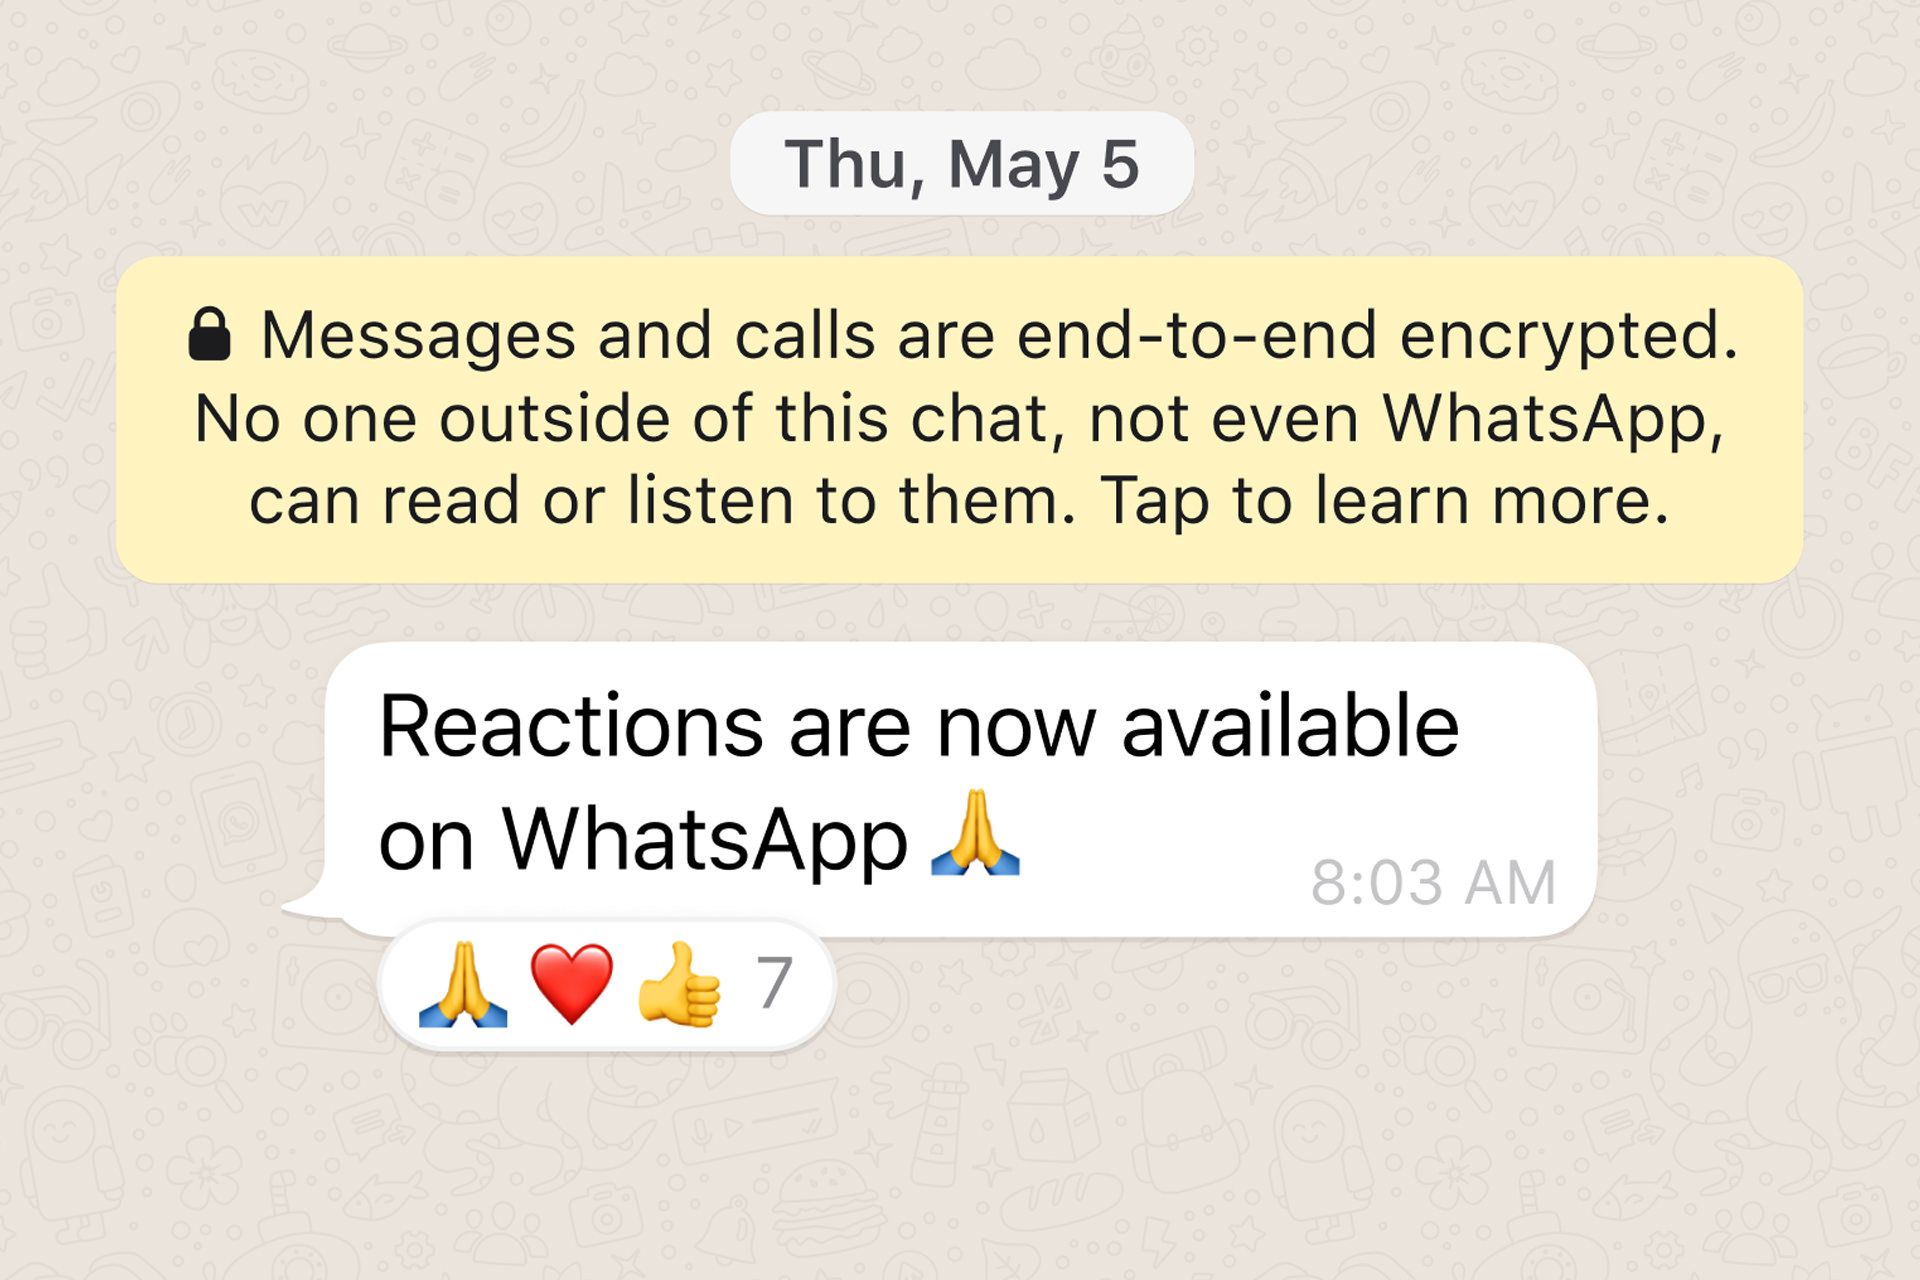 قابلیت واکنش با ایموجی در واتساپ / WhatsApp / واتس اپ